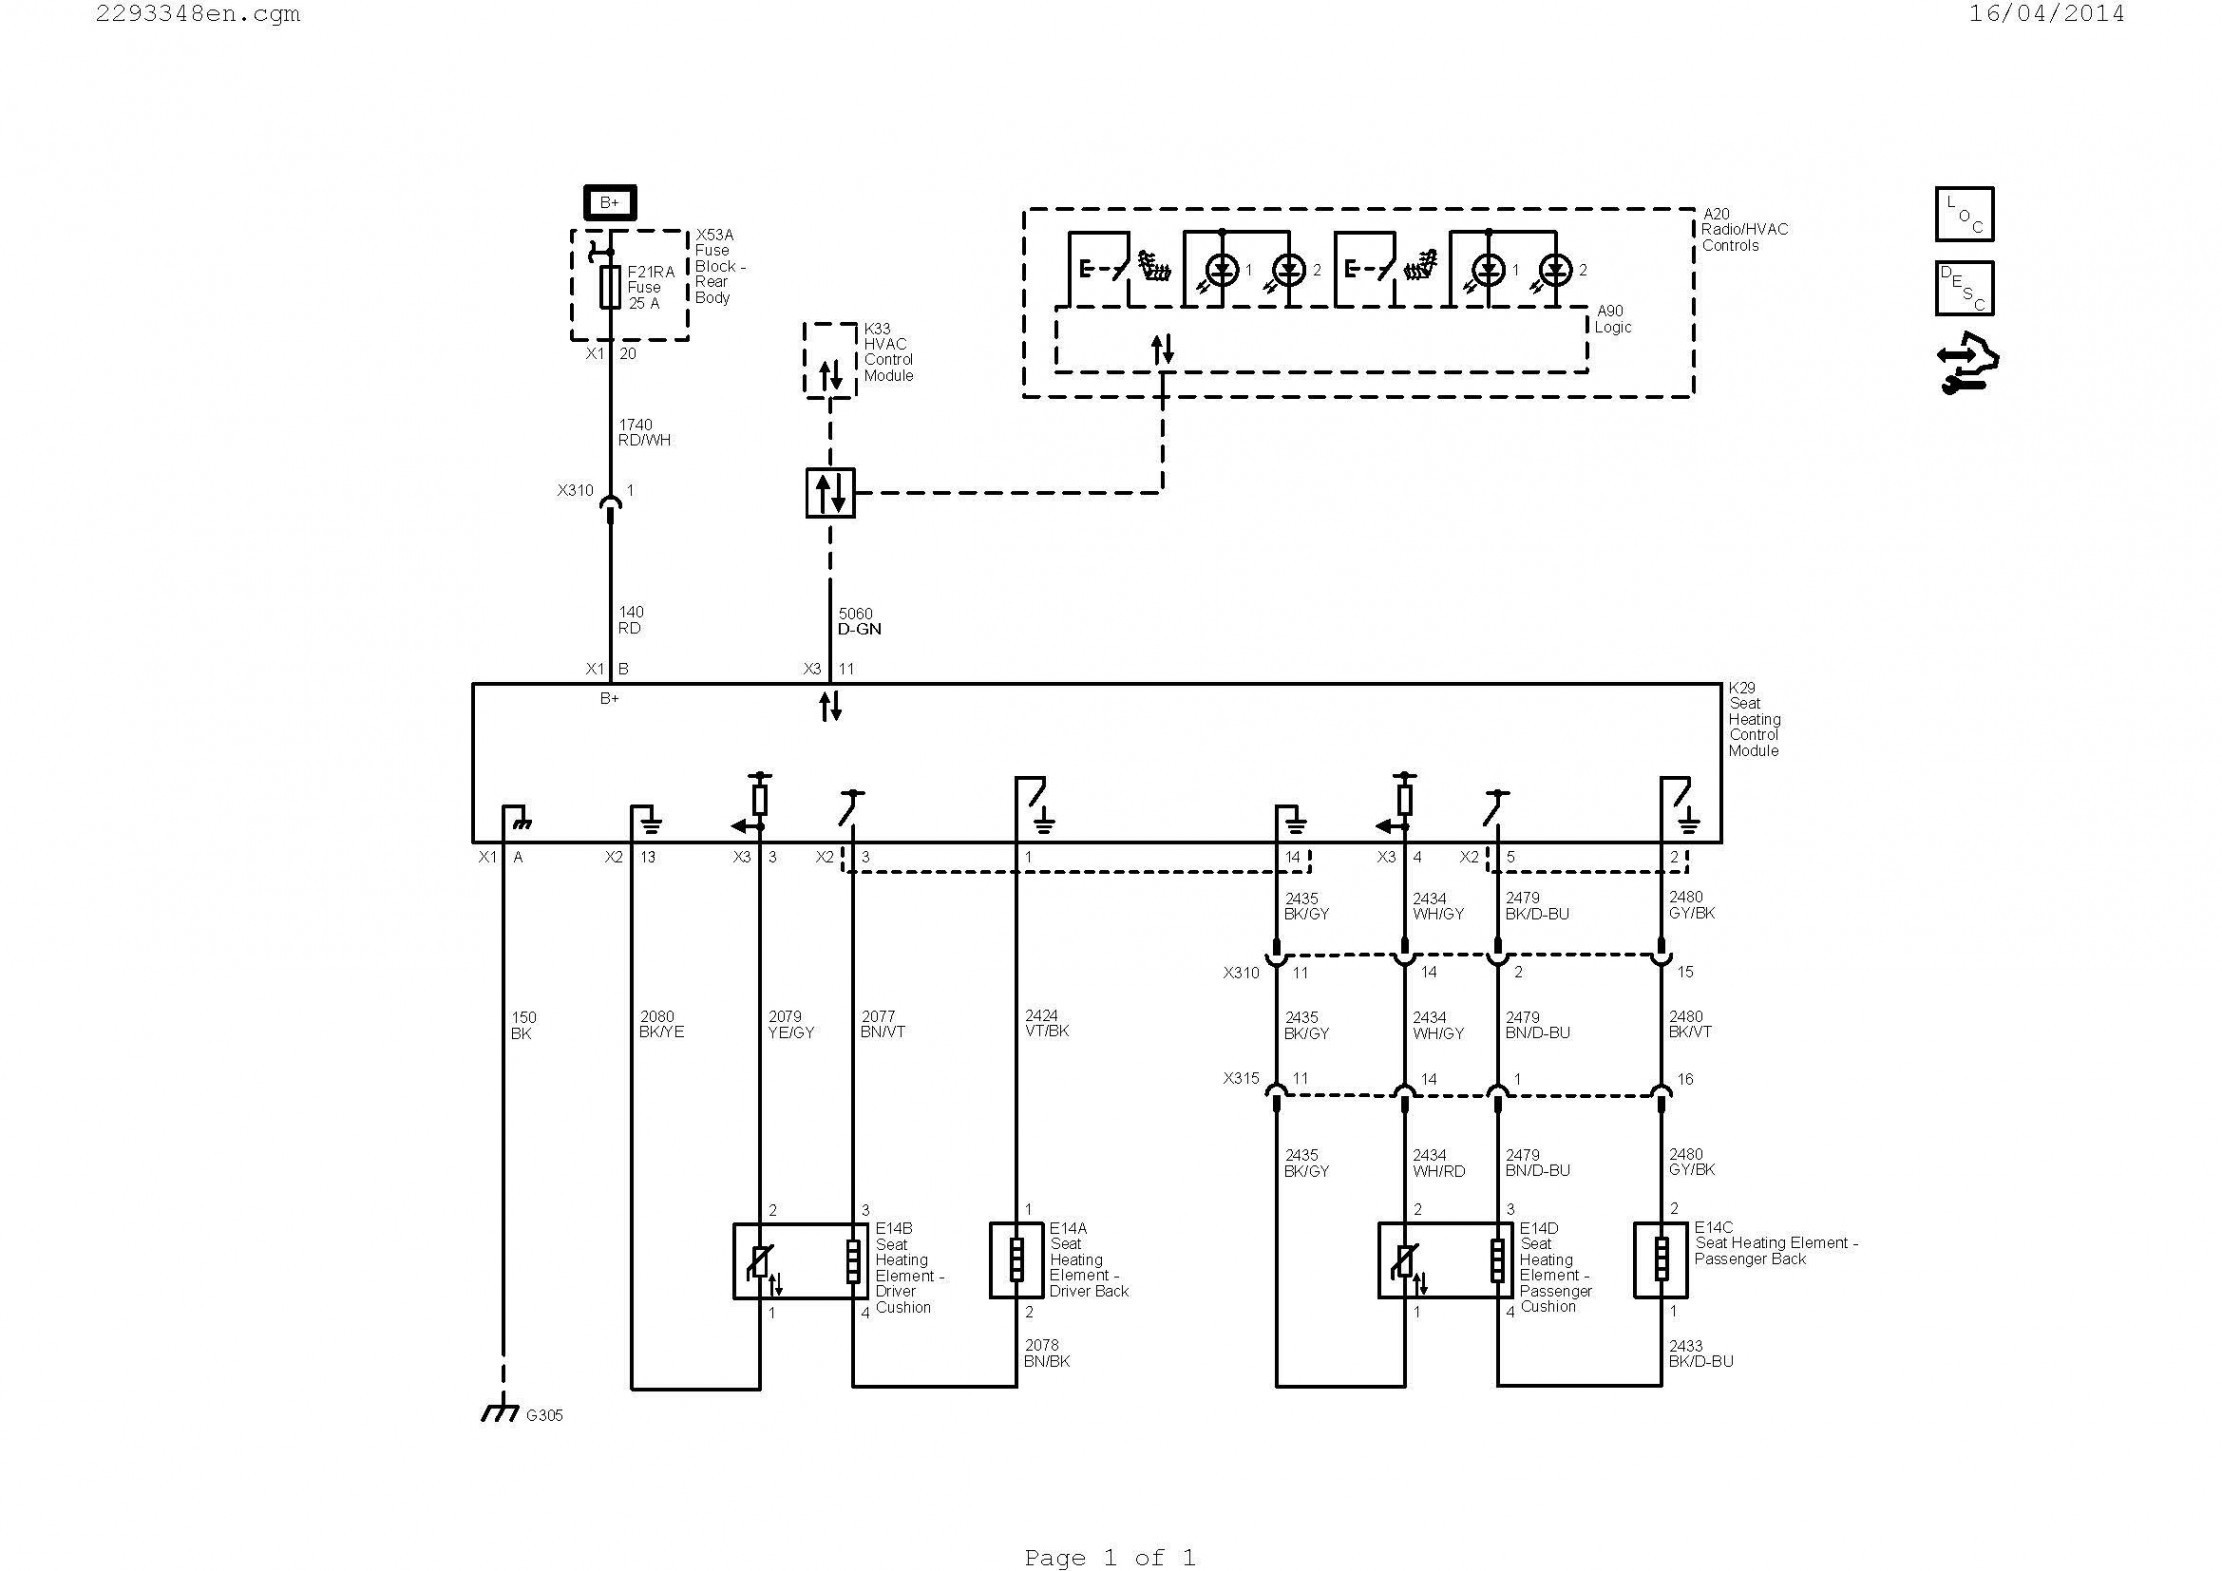 Phone Wiring Diagram Valid Telephone Wiring Diagram